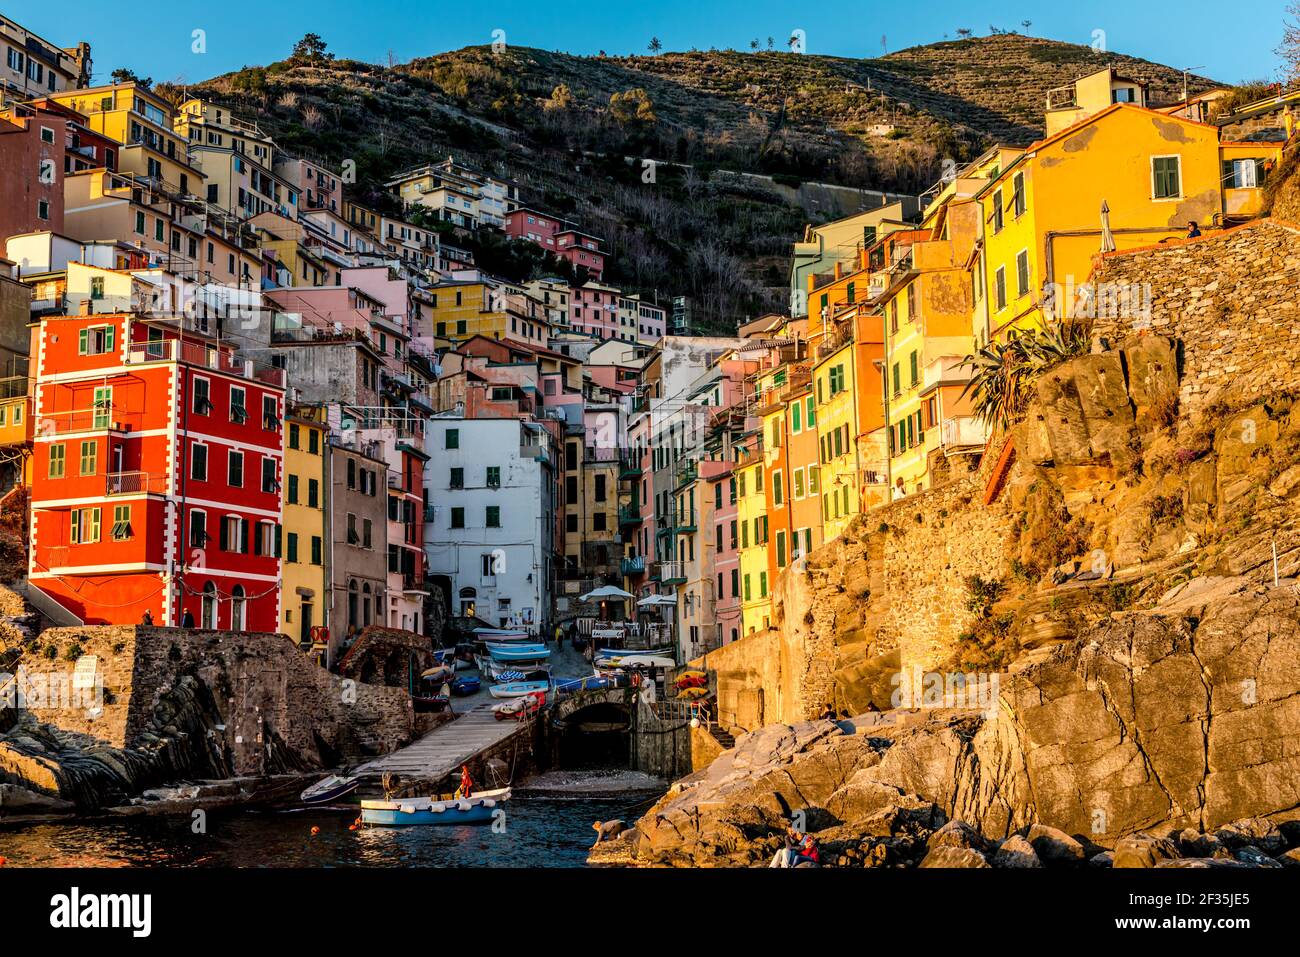 Vista ritagliata delle case colorate che circondano la strada in valle illuminata dal luminoso sole delle prime ore della sera. Villaggio di Riomaggiore, cinque Terre, Liguria, Italia. Foto Stock